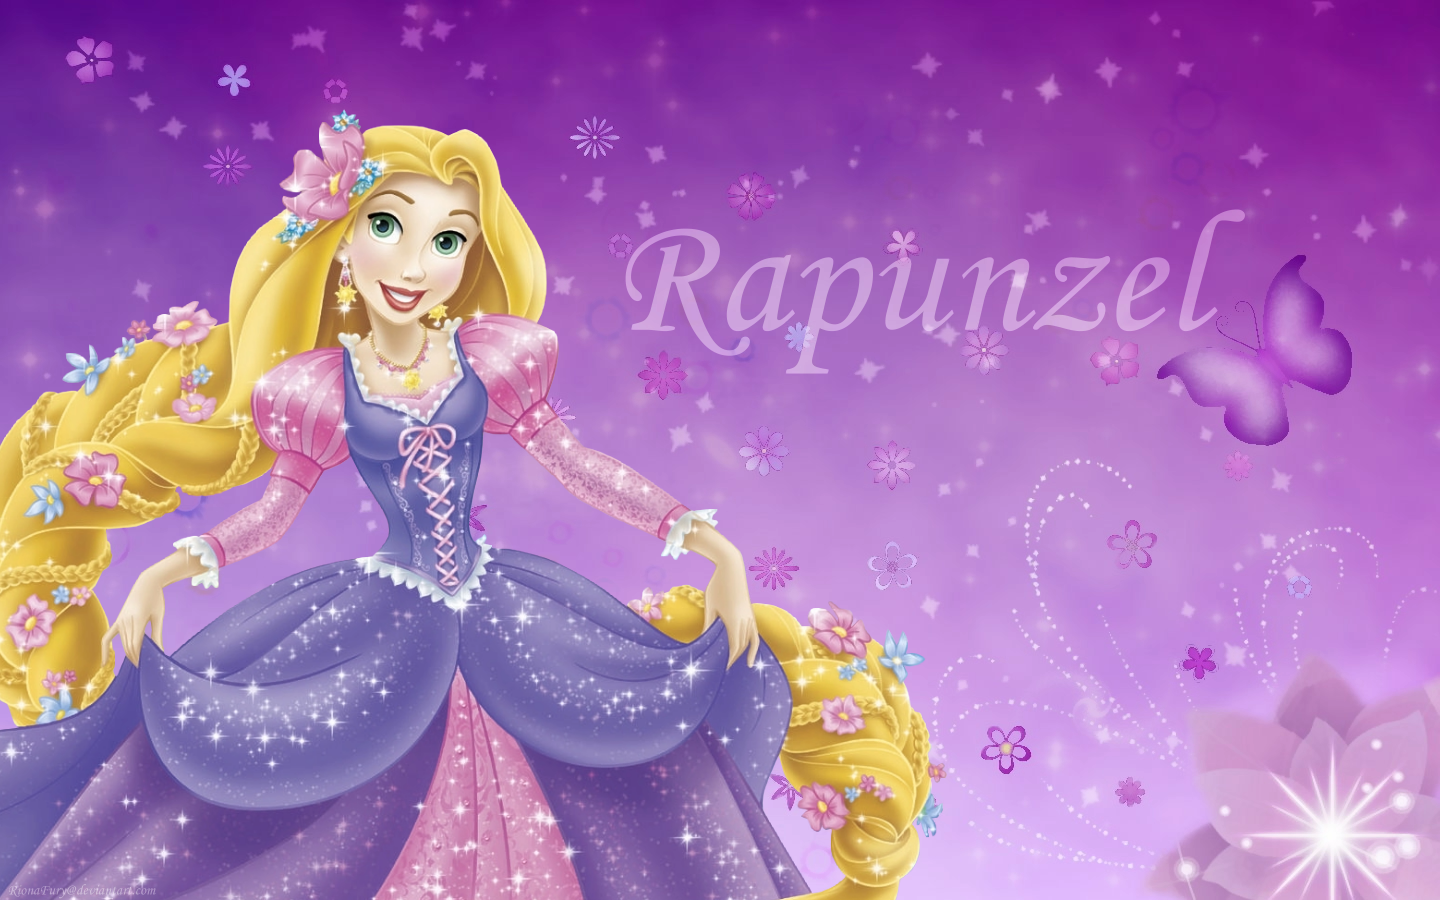 Disney Princess Rapunzel picture, Disney Princess Rapunzel image 